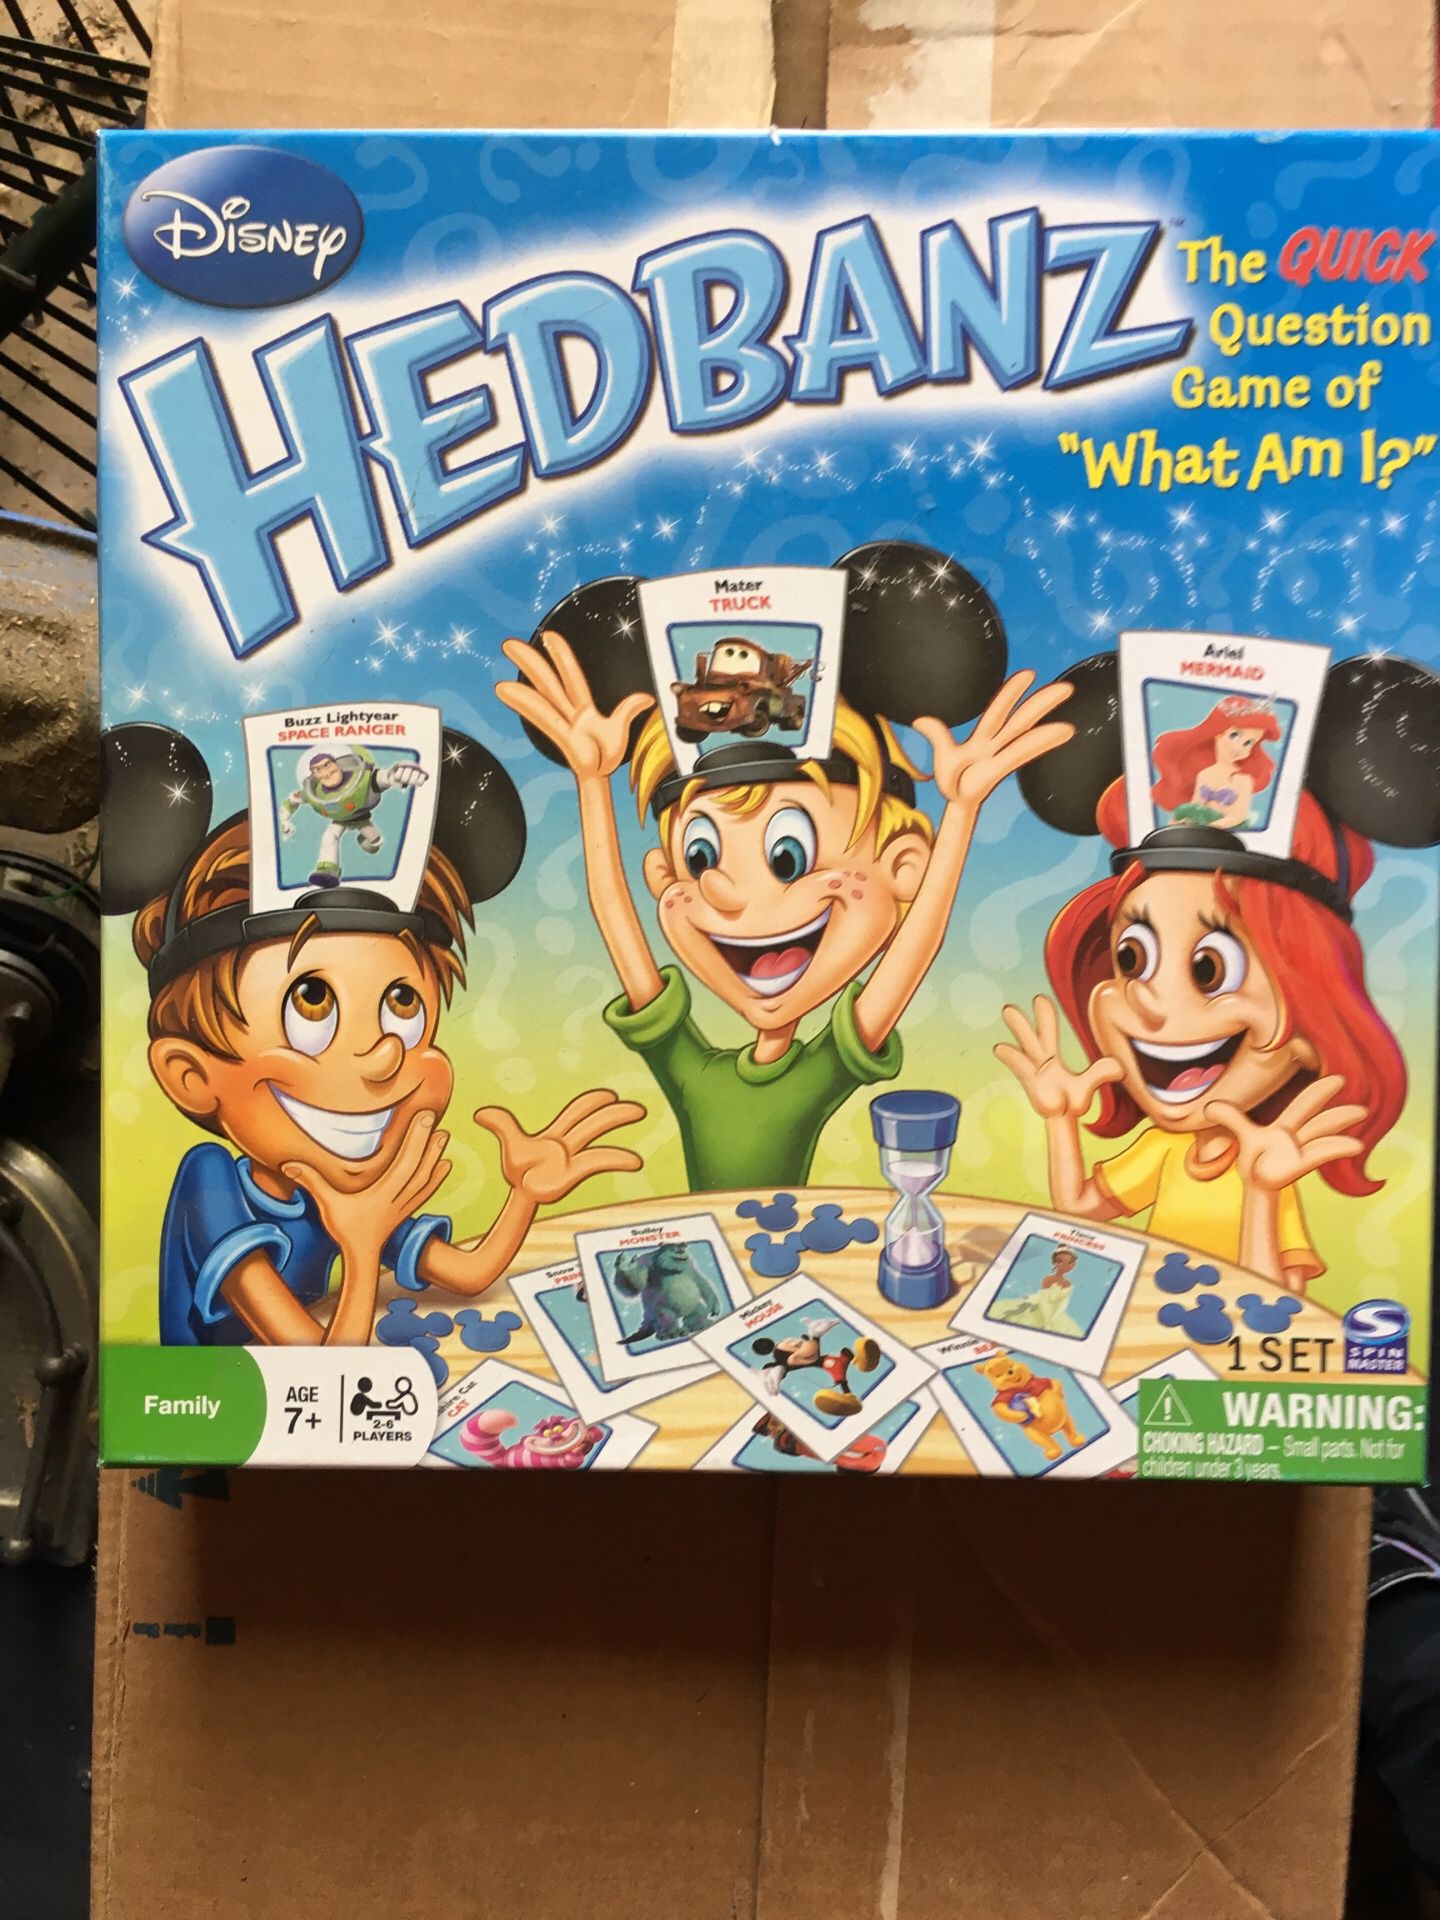 Headbanz Disney edition